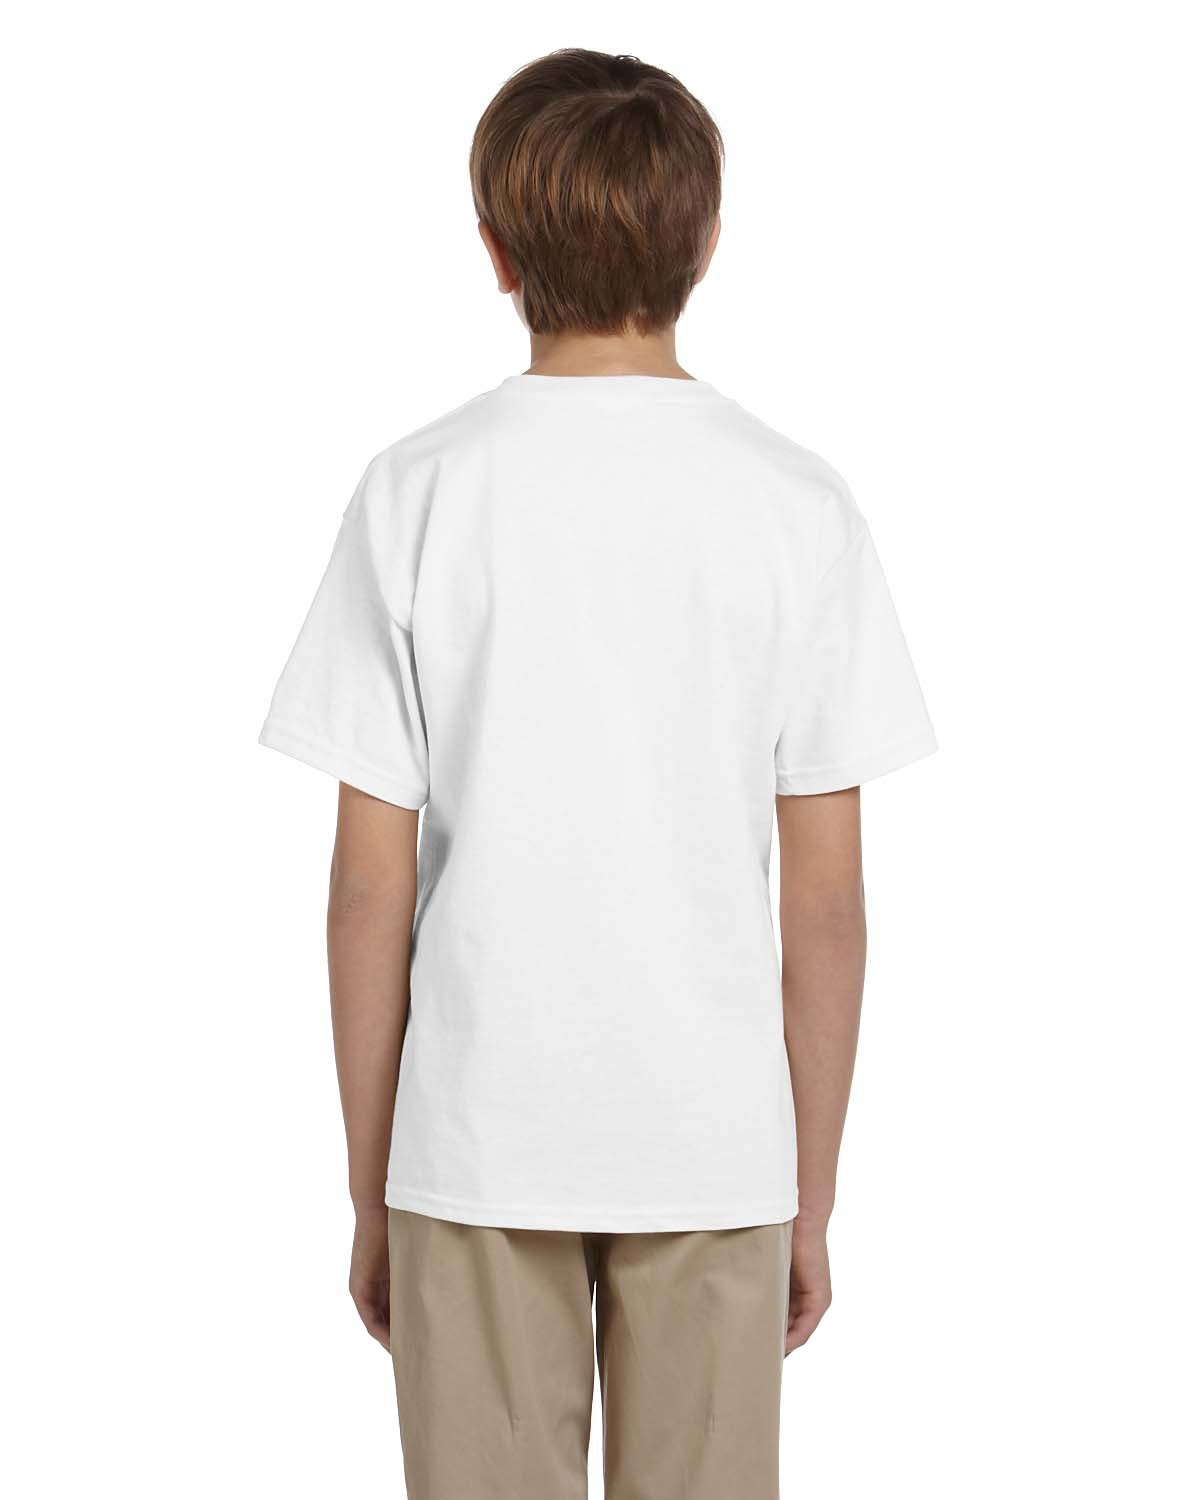 Personalised T-Shirt Boy Kid